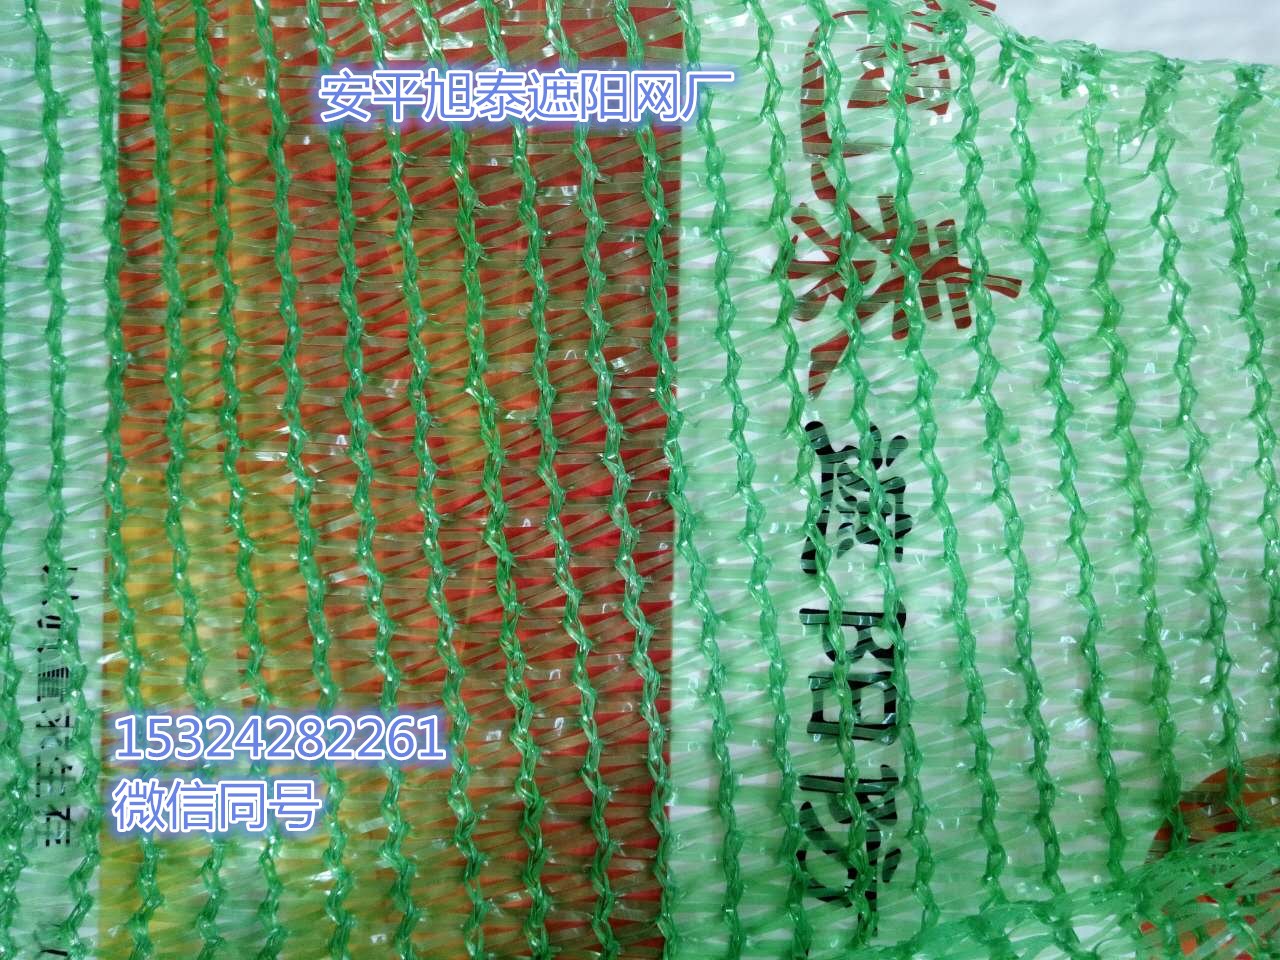 安平旭泰遮阳网厂专业生产绿色三针加密盖土网